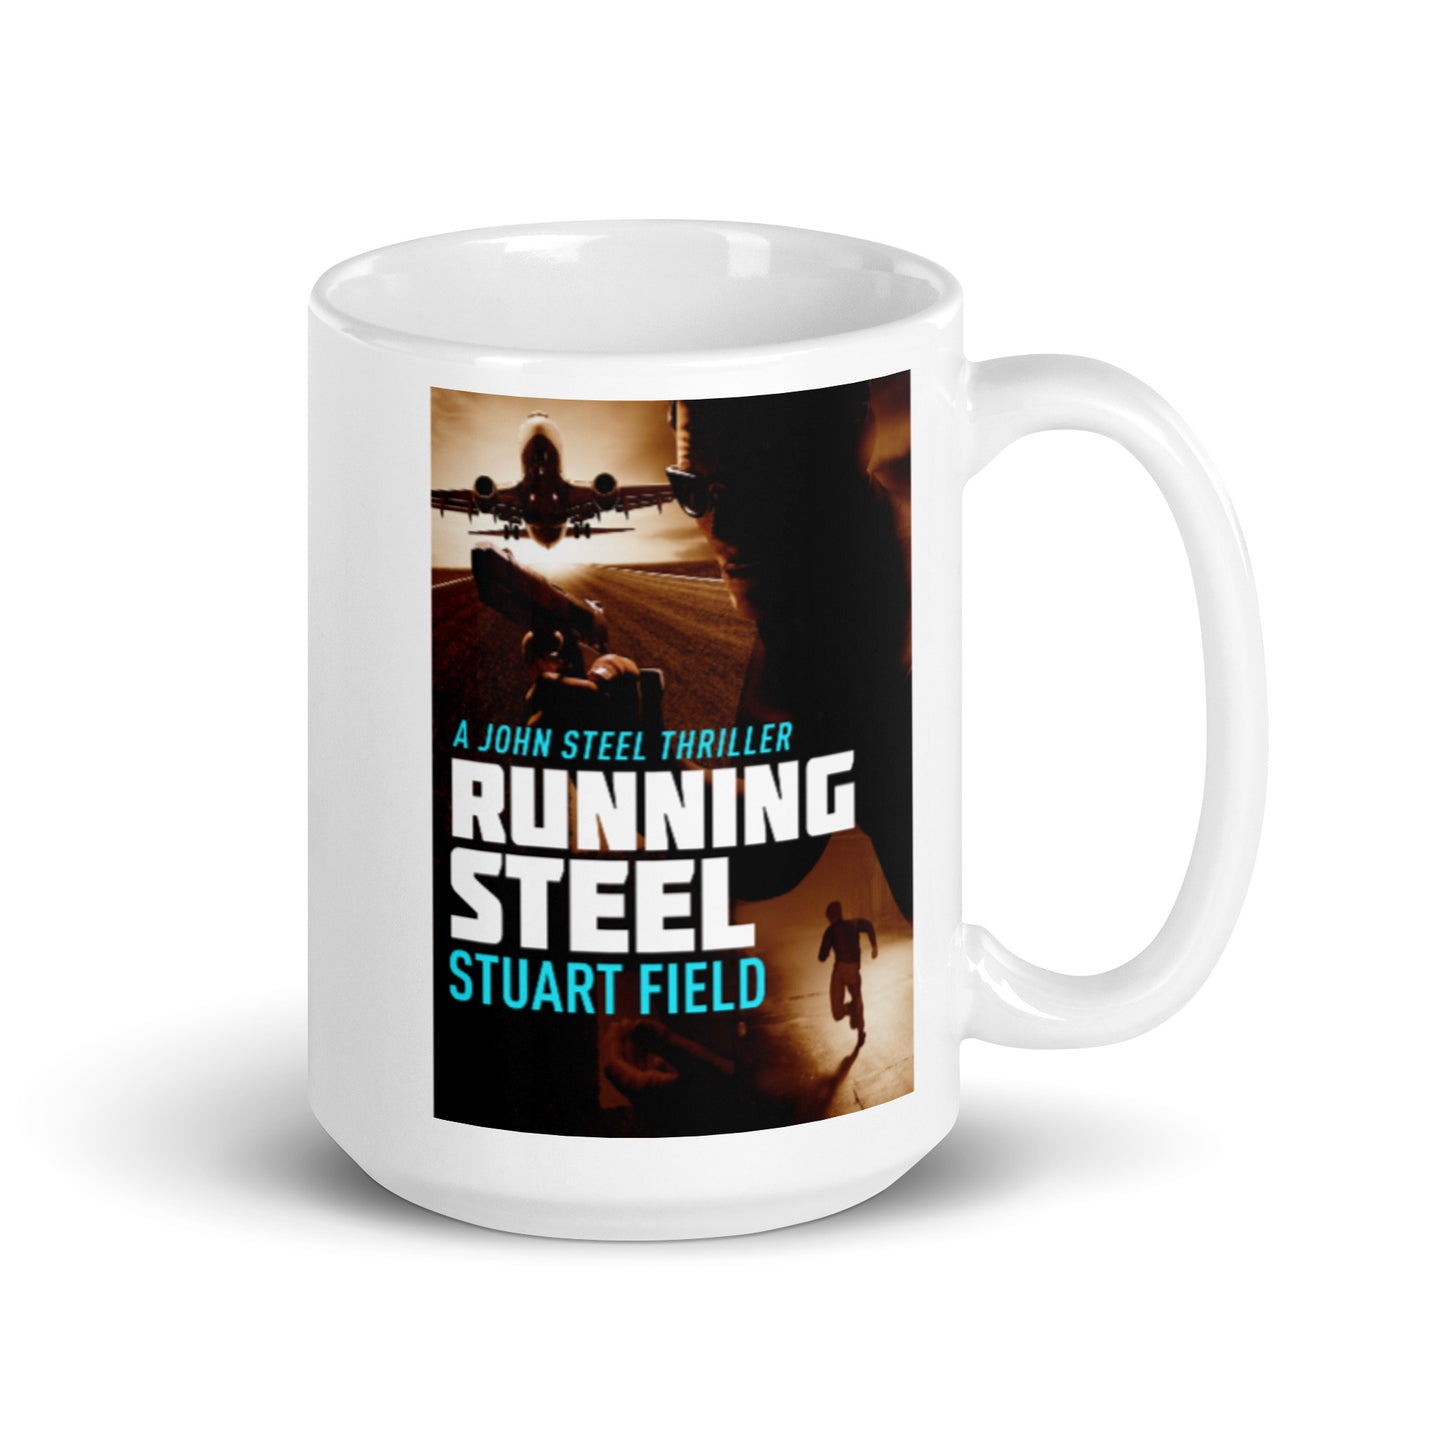 Running Steel - White Coffee Mug